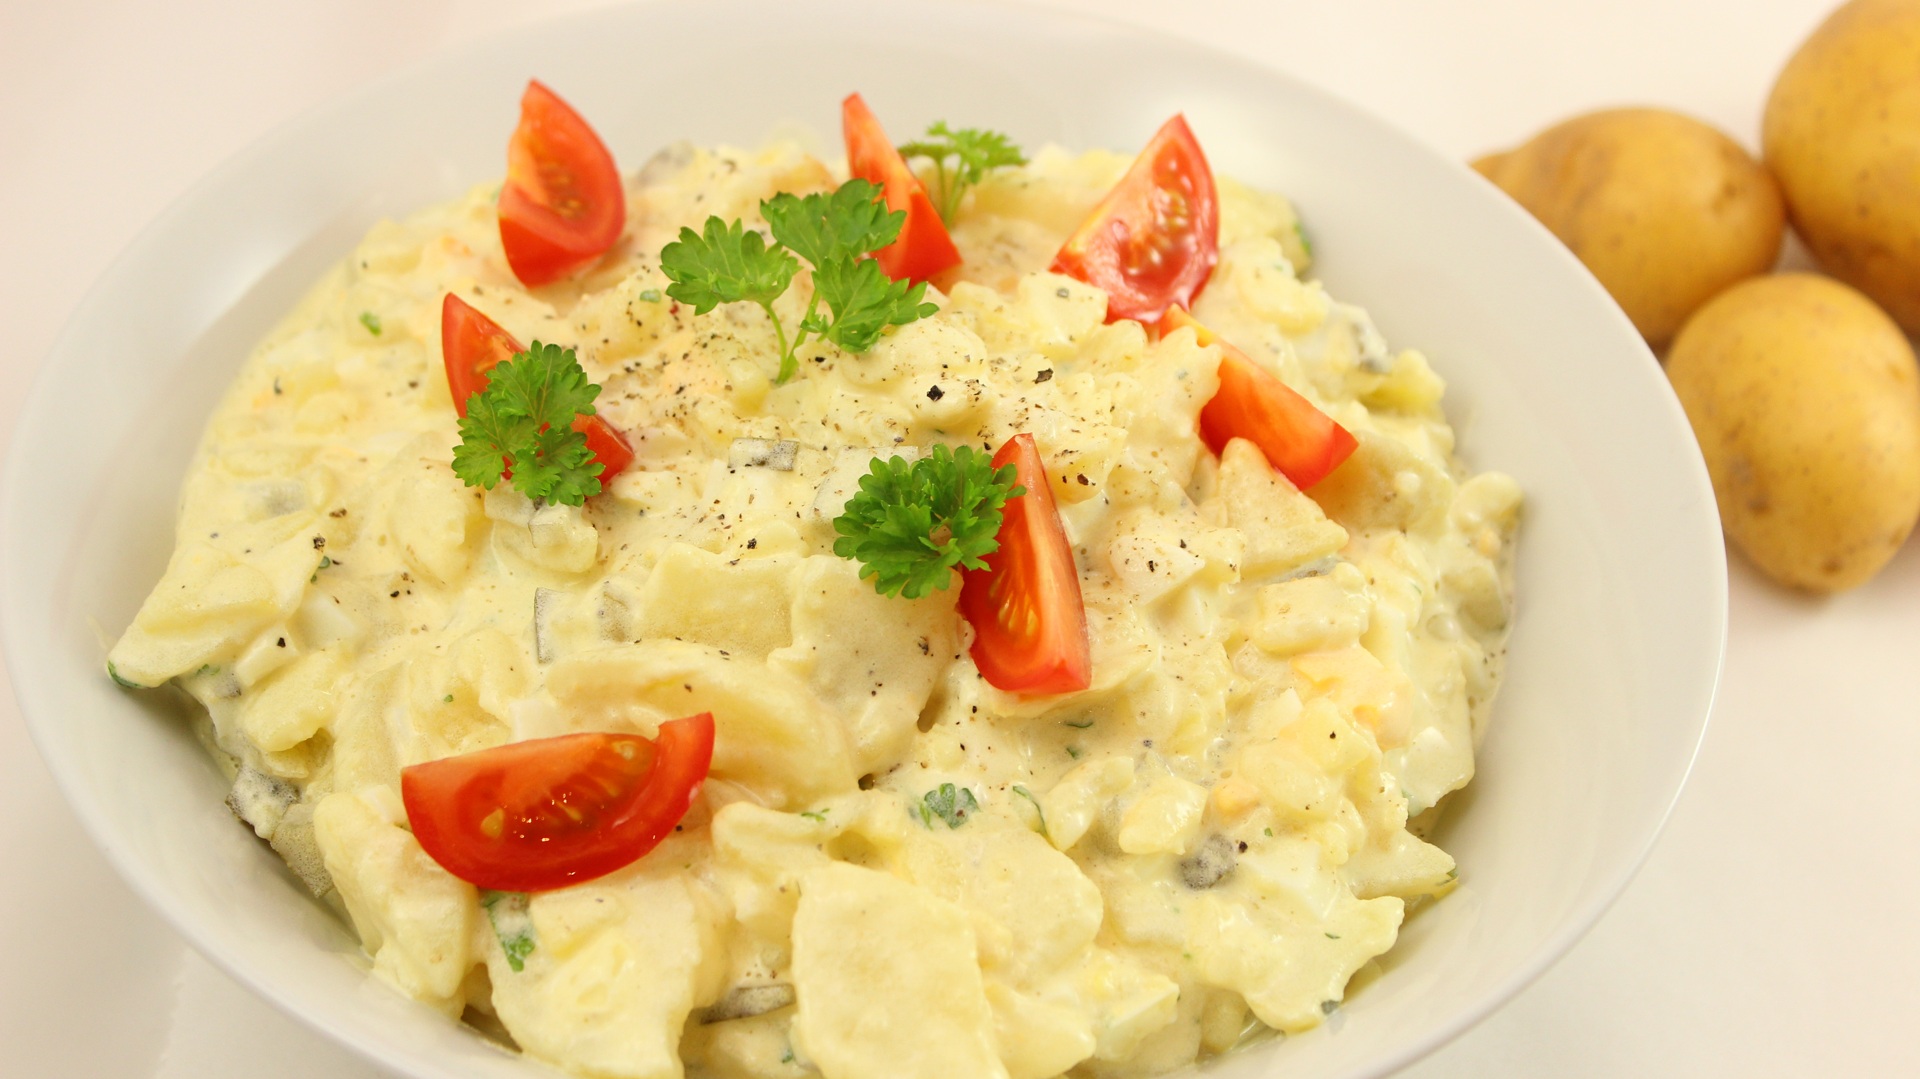 Rezept: Kartoffelsalat Rezept | Klassischer Kartoffelsalat mit Mayonnaise